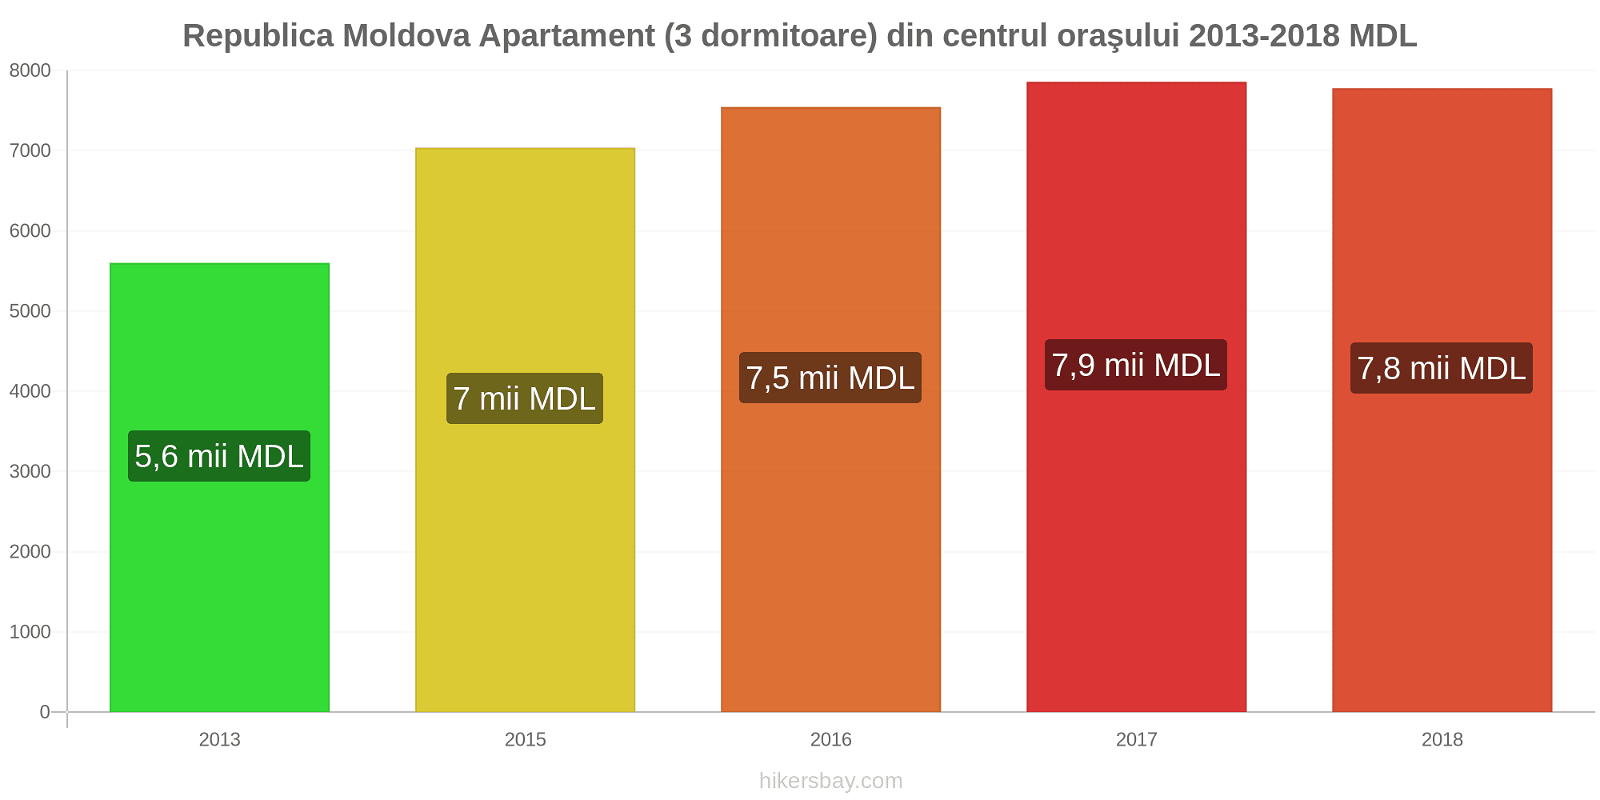 Republica Moldova modificări de preț Apartament (3 dormitoare) din centrul oraşului hikersbay.com